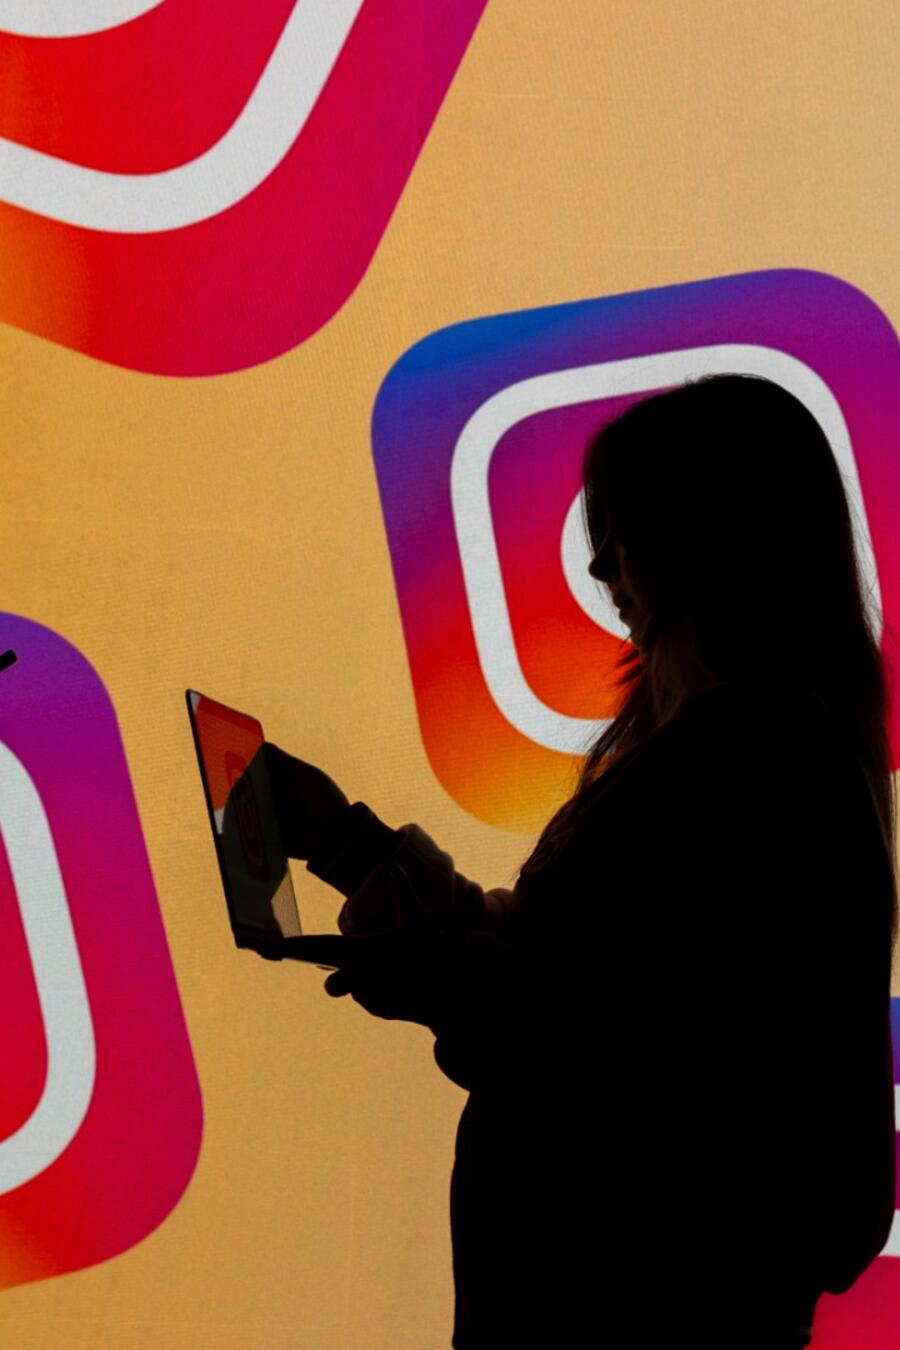 Instagram implementa nuevas acciones para la protección de menores